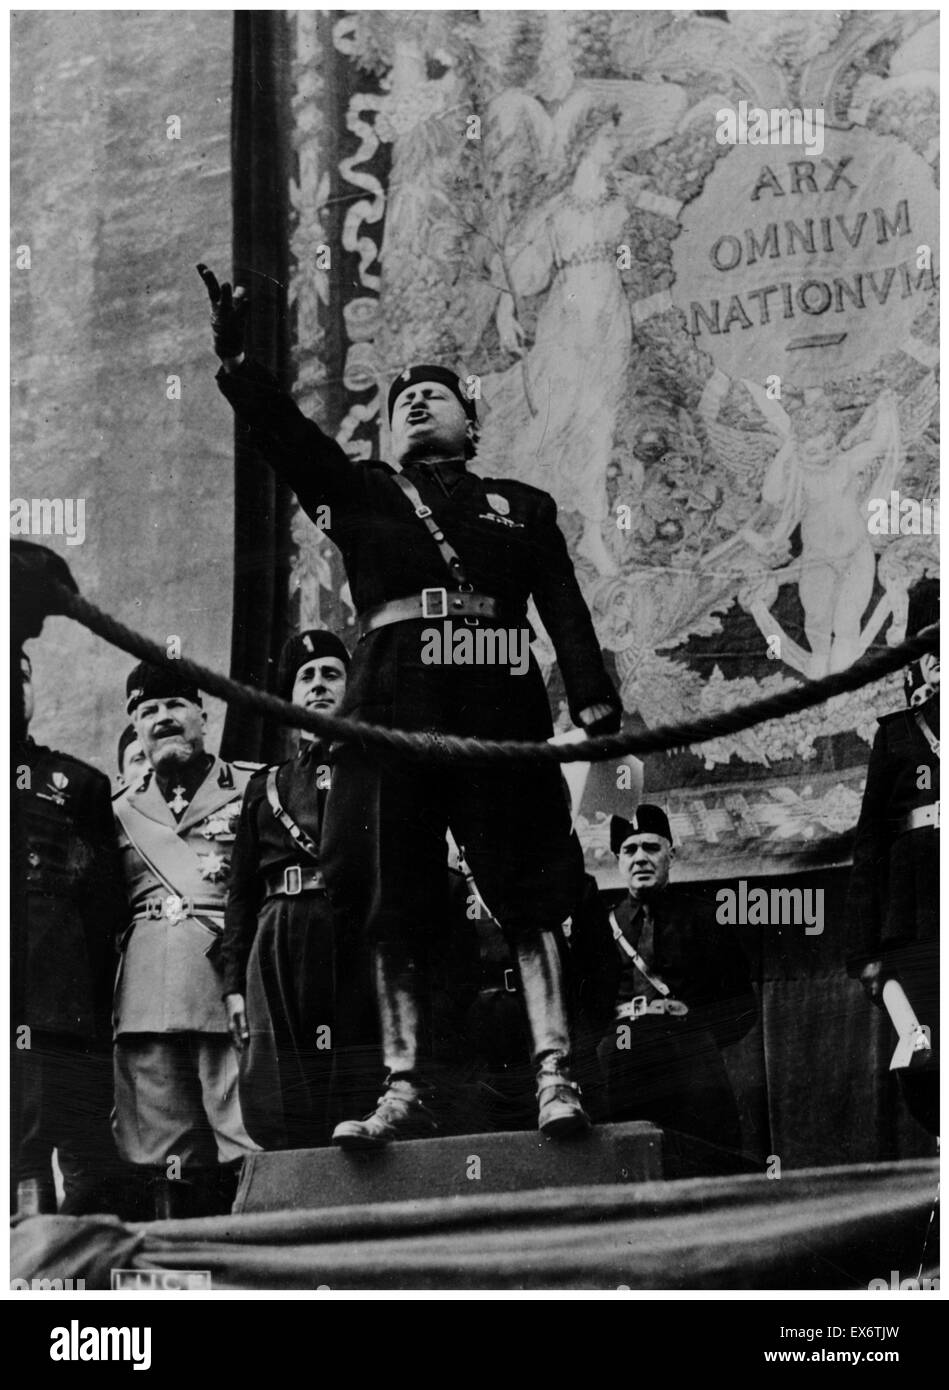 Benito Mussolini (1883 - 28 avril 1945) Italien, homme politique, journaliste et chef du parti fasciste national porte sur un rallye 1933 Banque D'Images